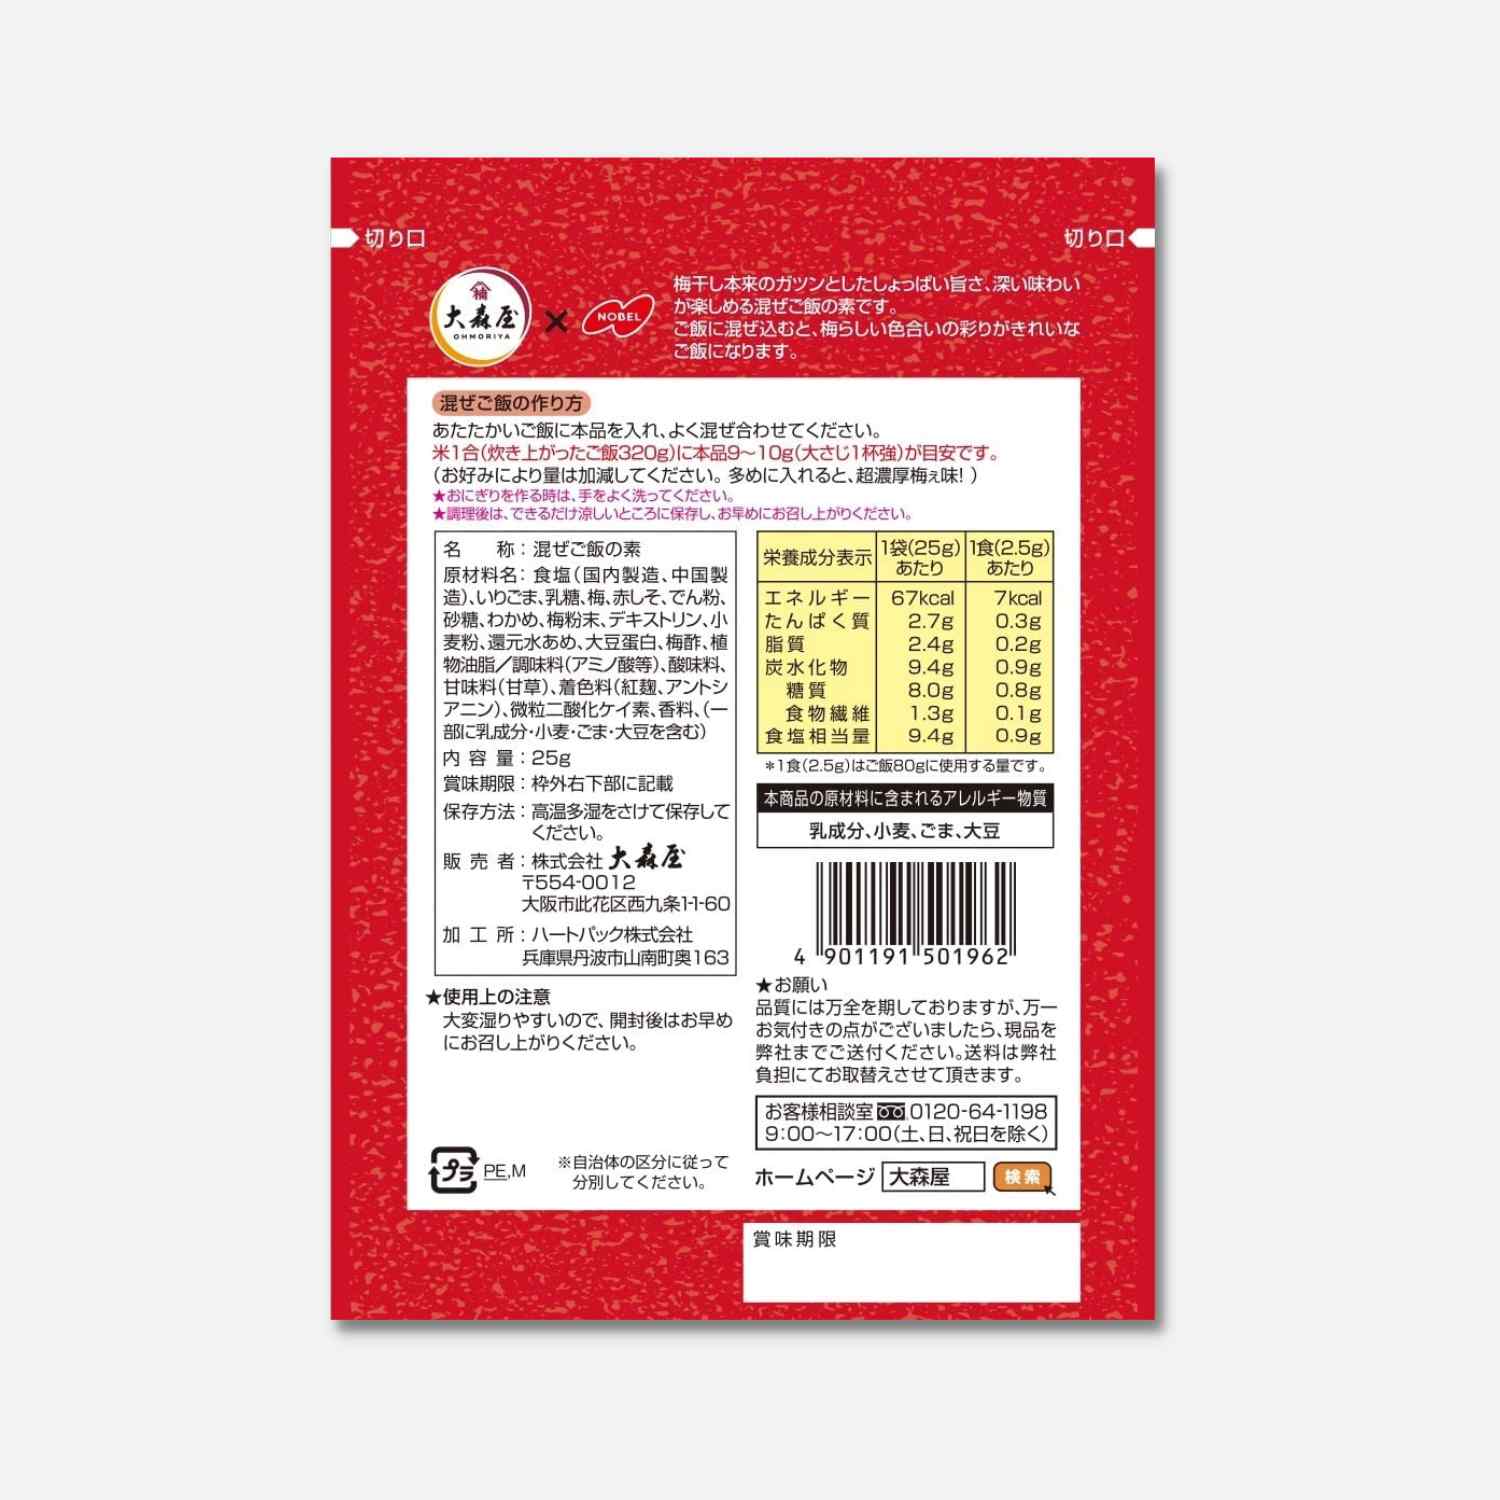 Oomoriya Furikake Strong Dried Ume 23g - Buy Me Japan